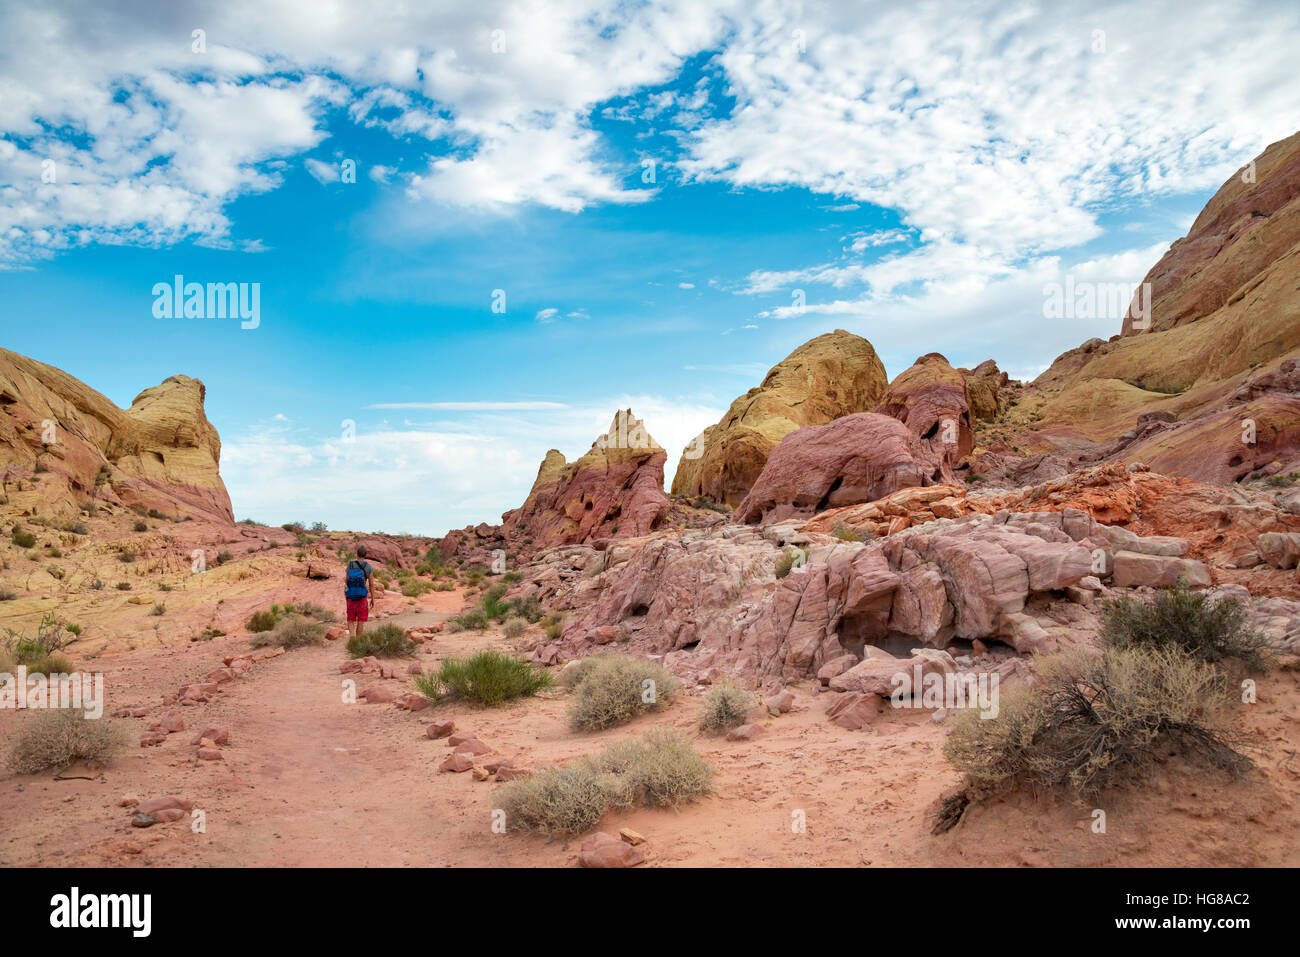 Solo giovane maschio escursionista sulla Cupola Bianca Trail, rosso arancio formazioni rocciose, la Valle del Fuoco del Parco Statale di Deserto Mojave, Nevada, STATI UNITI D'AMERICA Foto Stock